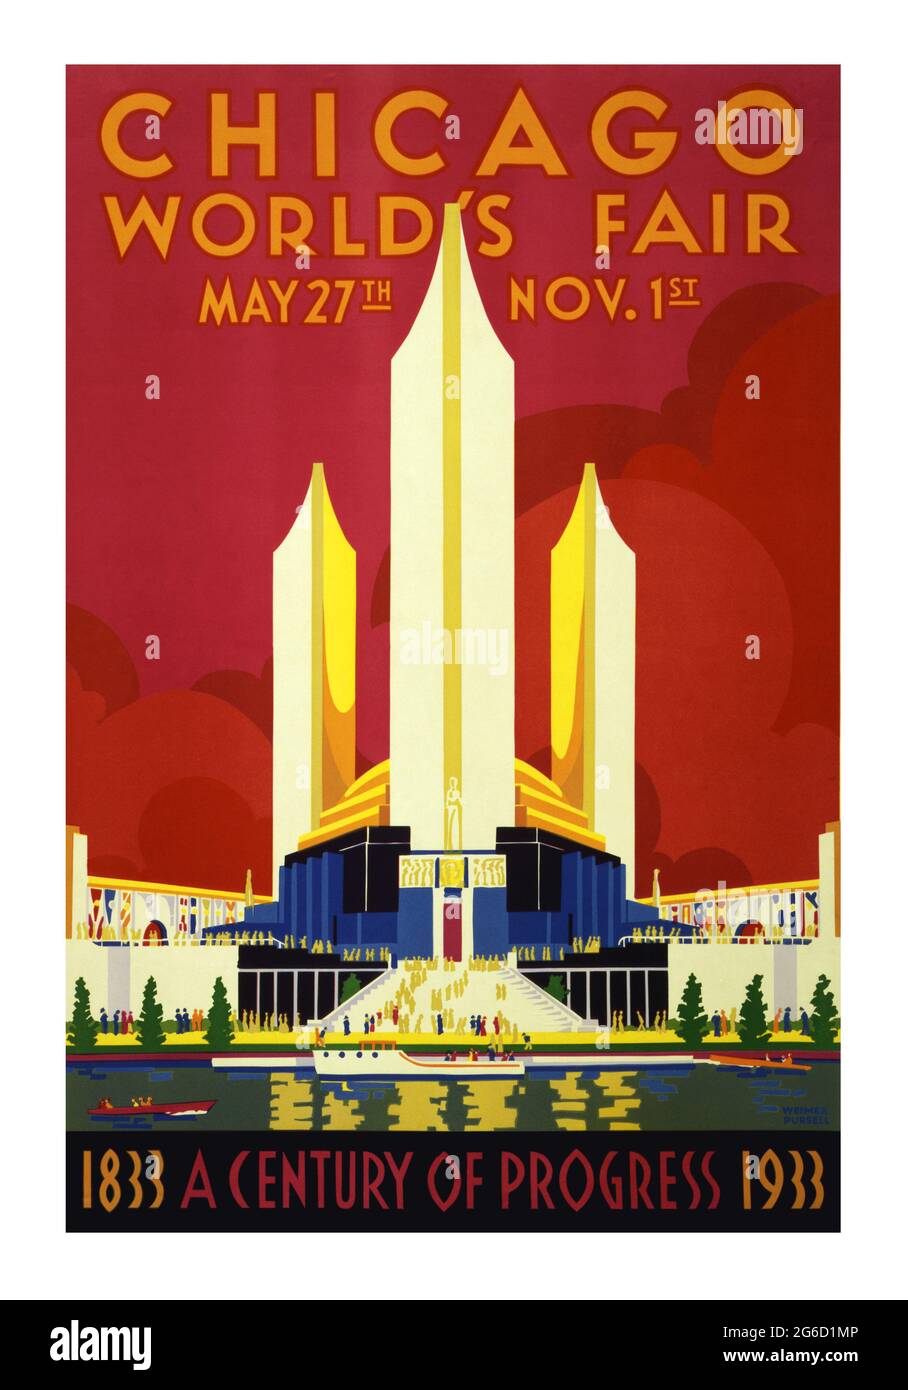 Eine Jahrhundertausstellung des Fortschritts, auch bekannt als Chicago World's Fair. Chicago Poster 1933. Technologische Innovation. Stockfoto